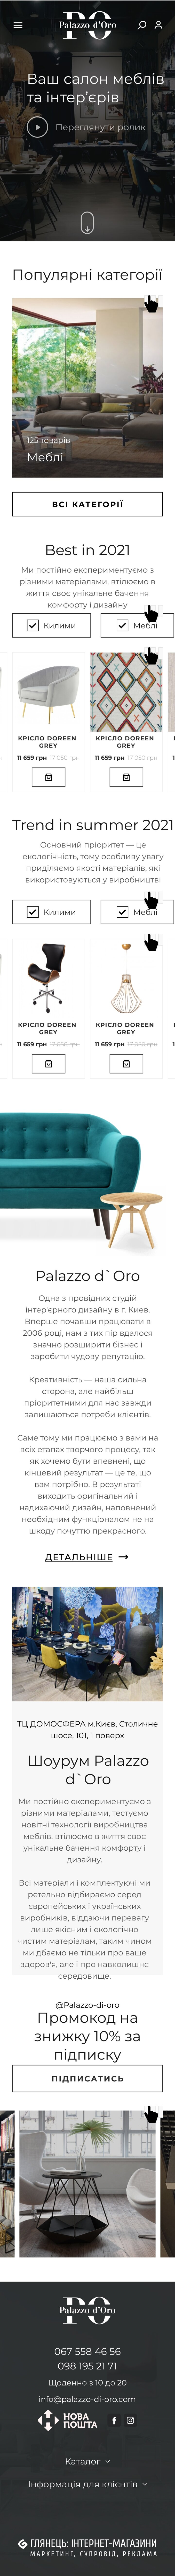 ™ Глянець, студія веб-дизайну — Інтернет-магазин Palazzo-di-oro_28